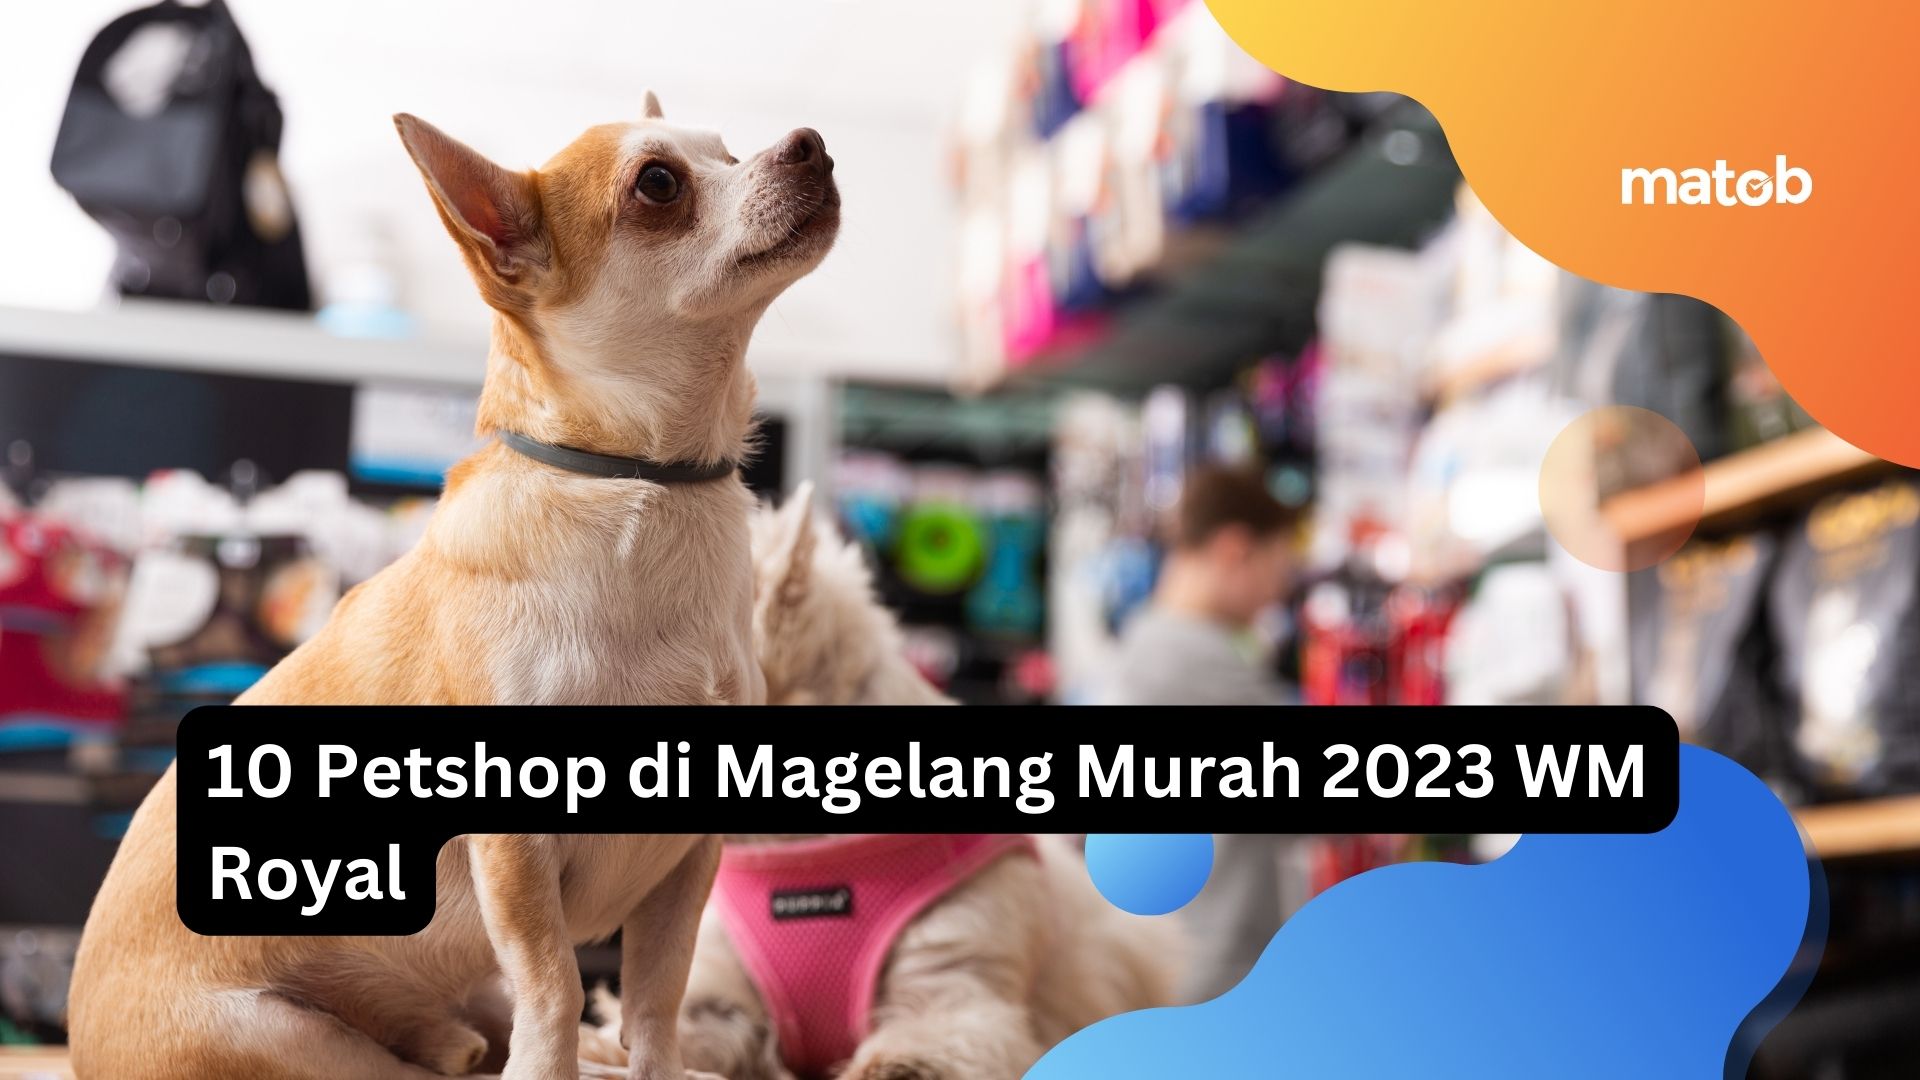 10 Petshop di Magelang Murah 2023 WM Royal